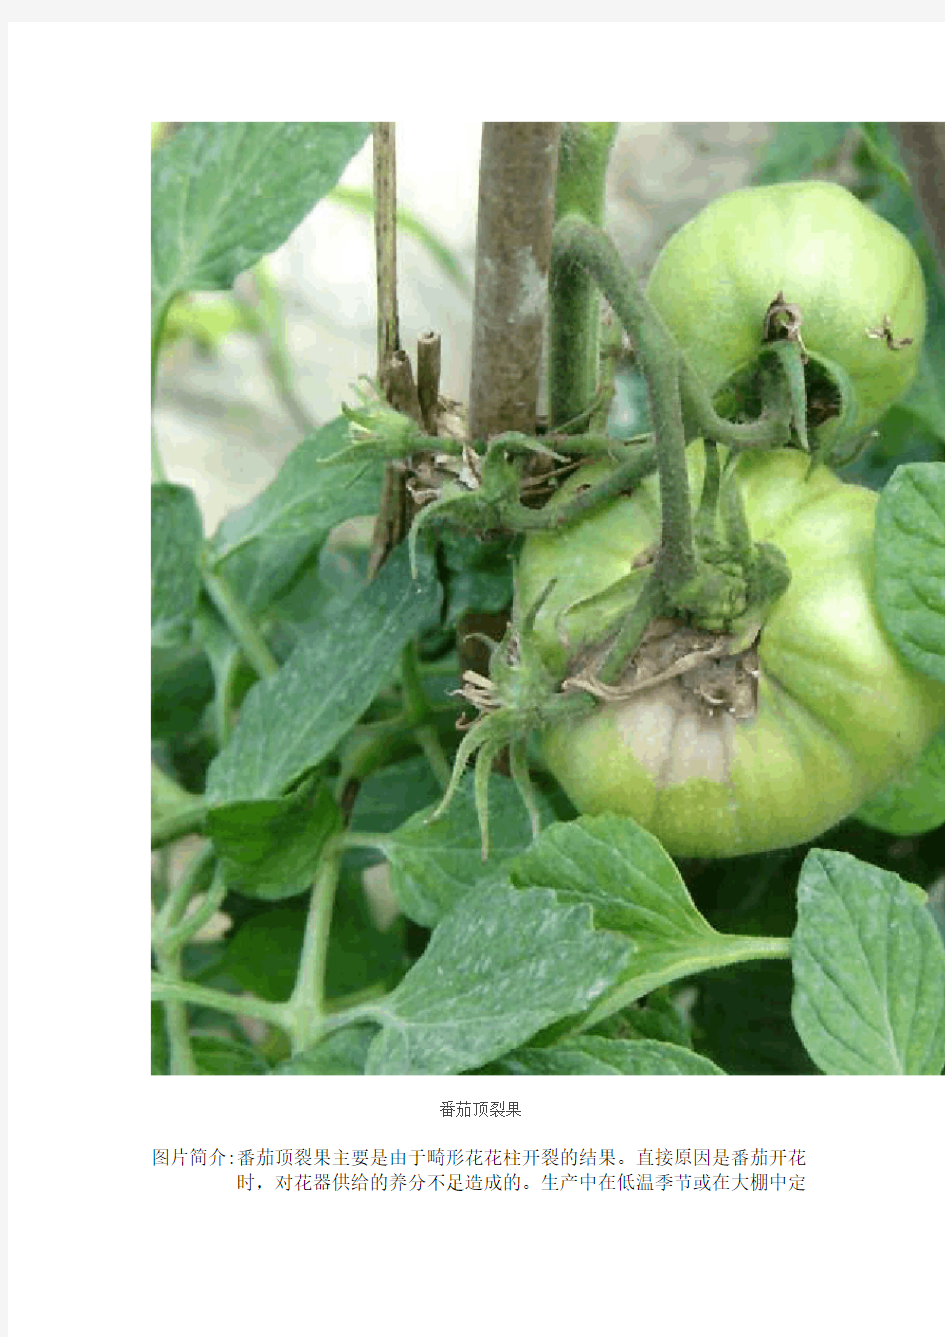 番茄病虫害图谱及防治方法介绍